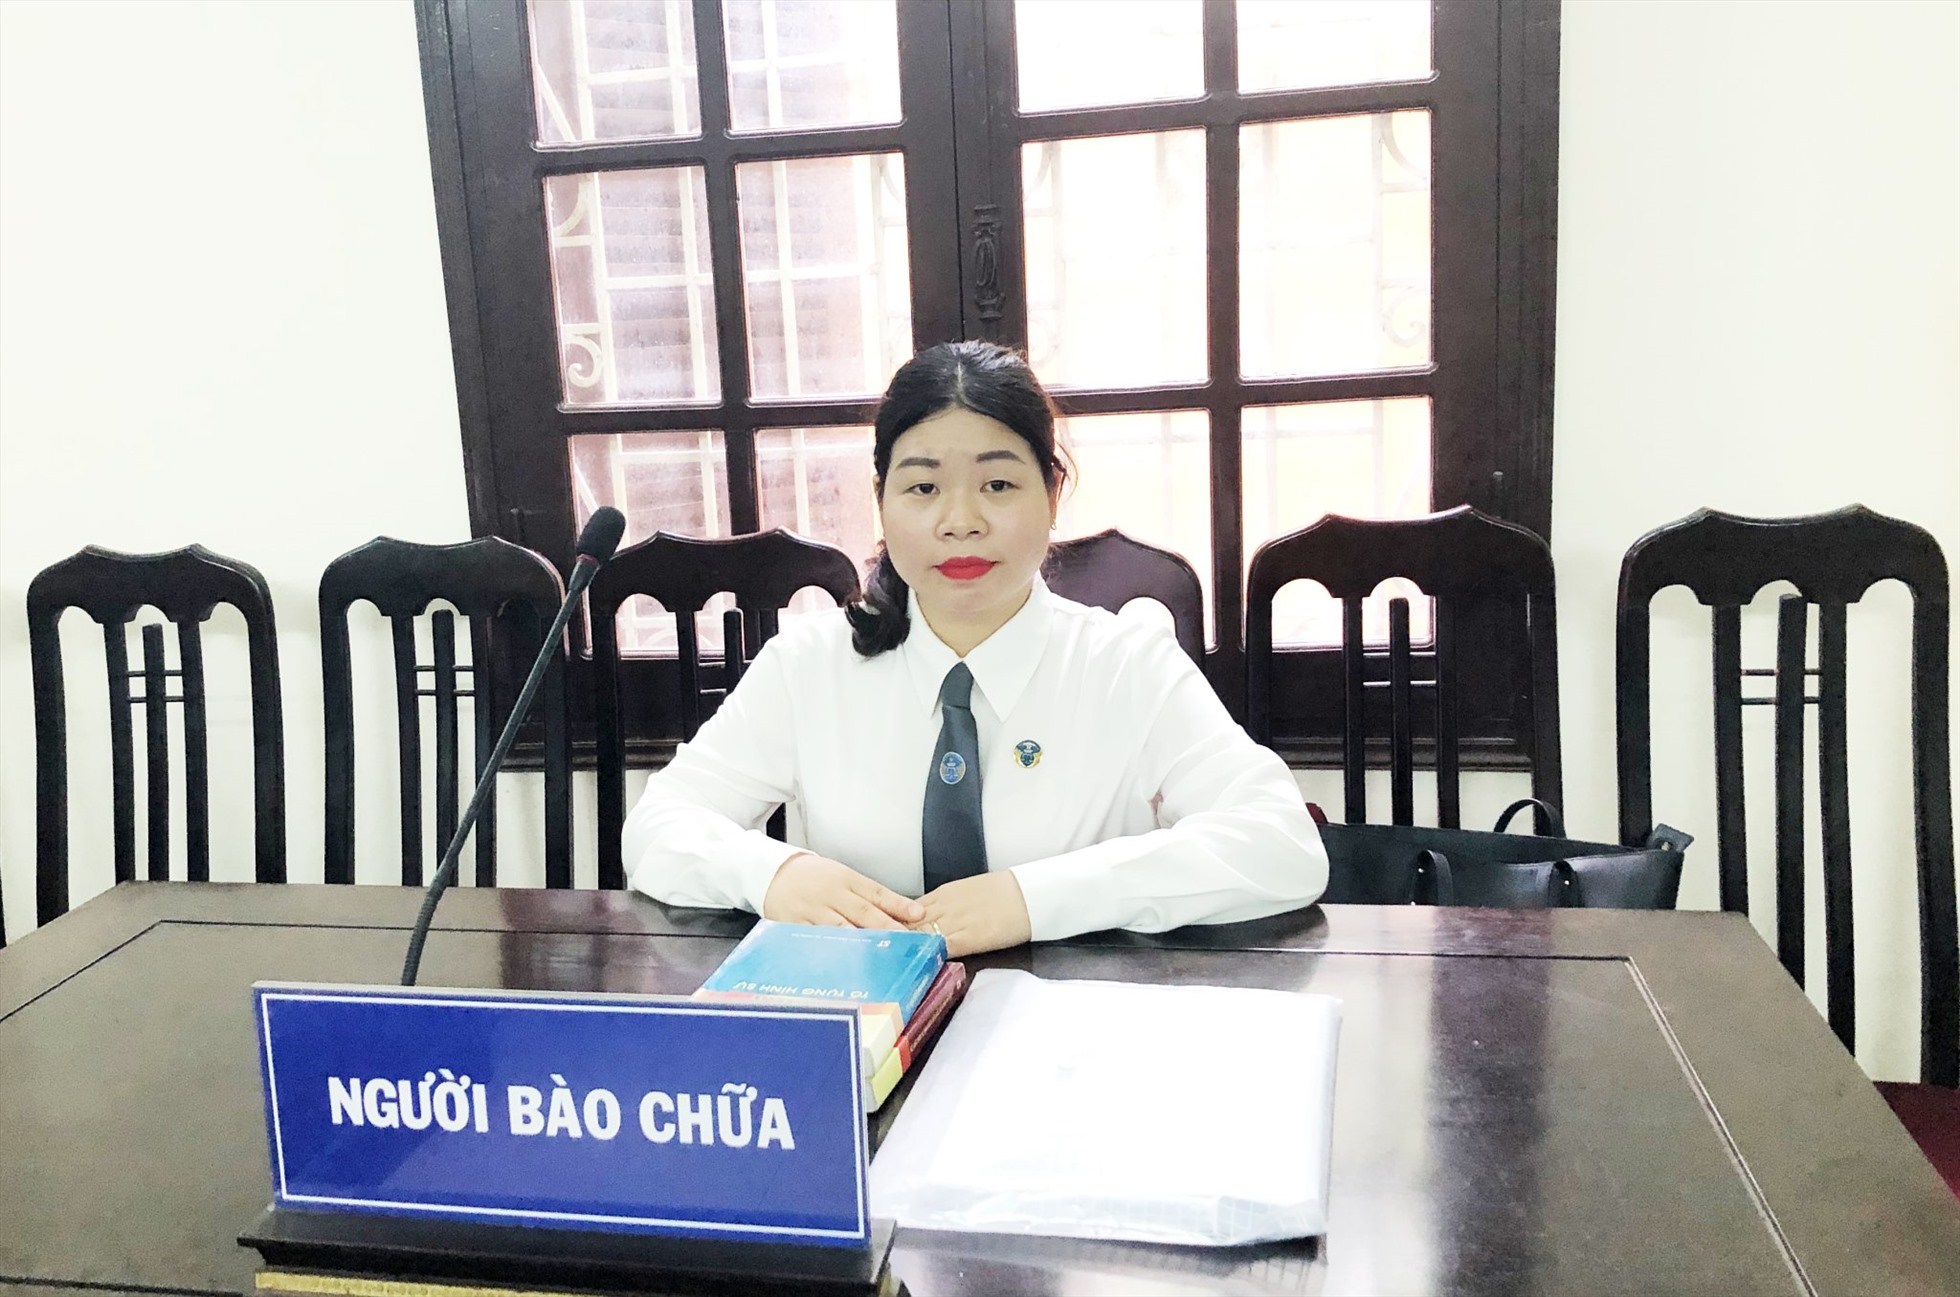 Luật sư Hà Thị Khuyên nói về xác nhận cư trú. Ảnh: Nhân vật cung cấp